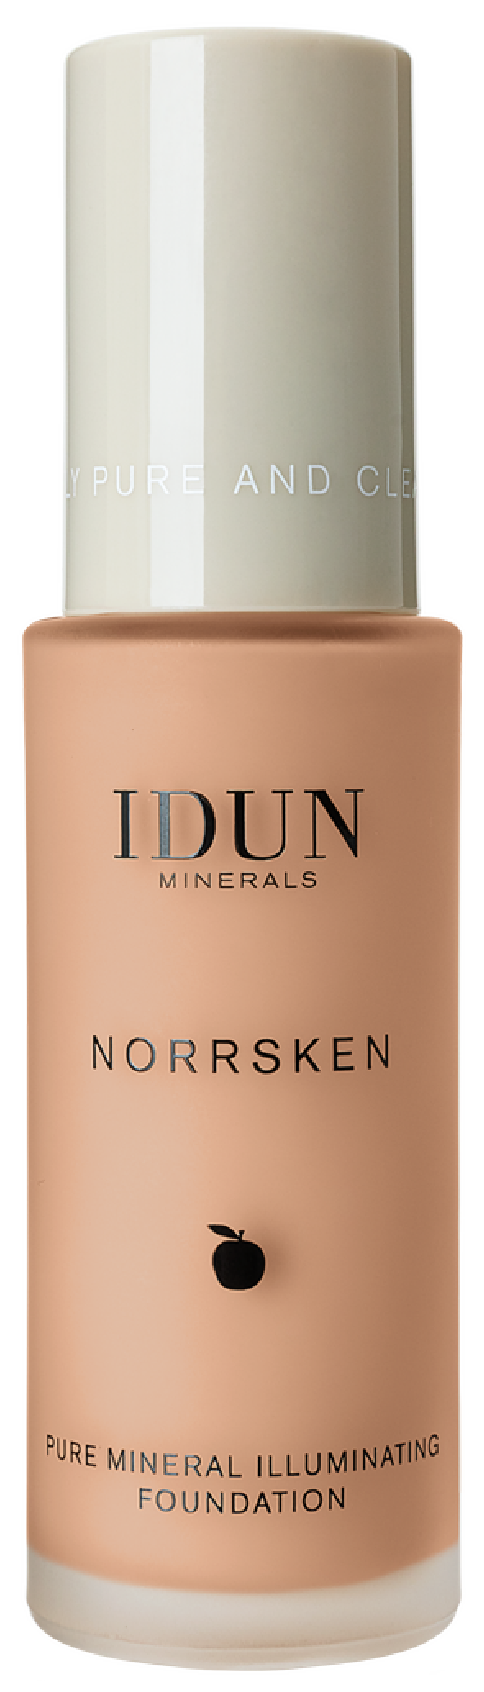 IDUN Minerals Norrsken Pure Mineral Illuminating Foundation, Siri, Medium, 30 ml